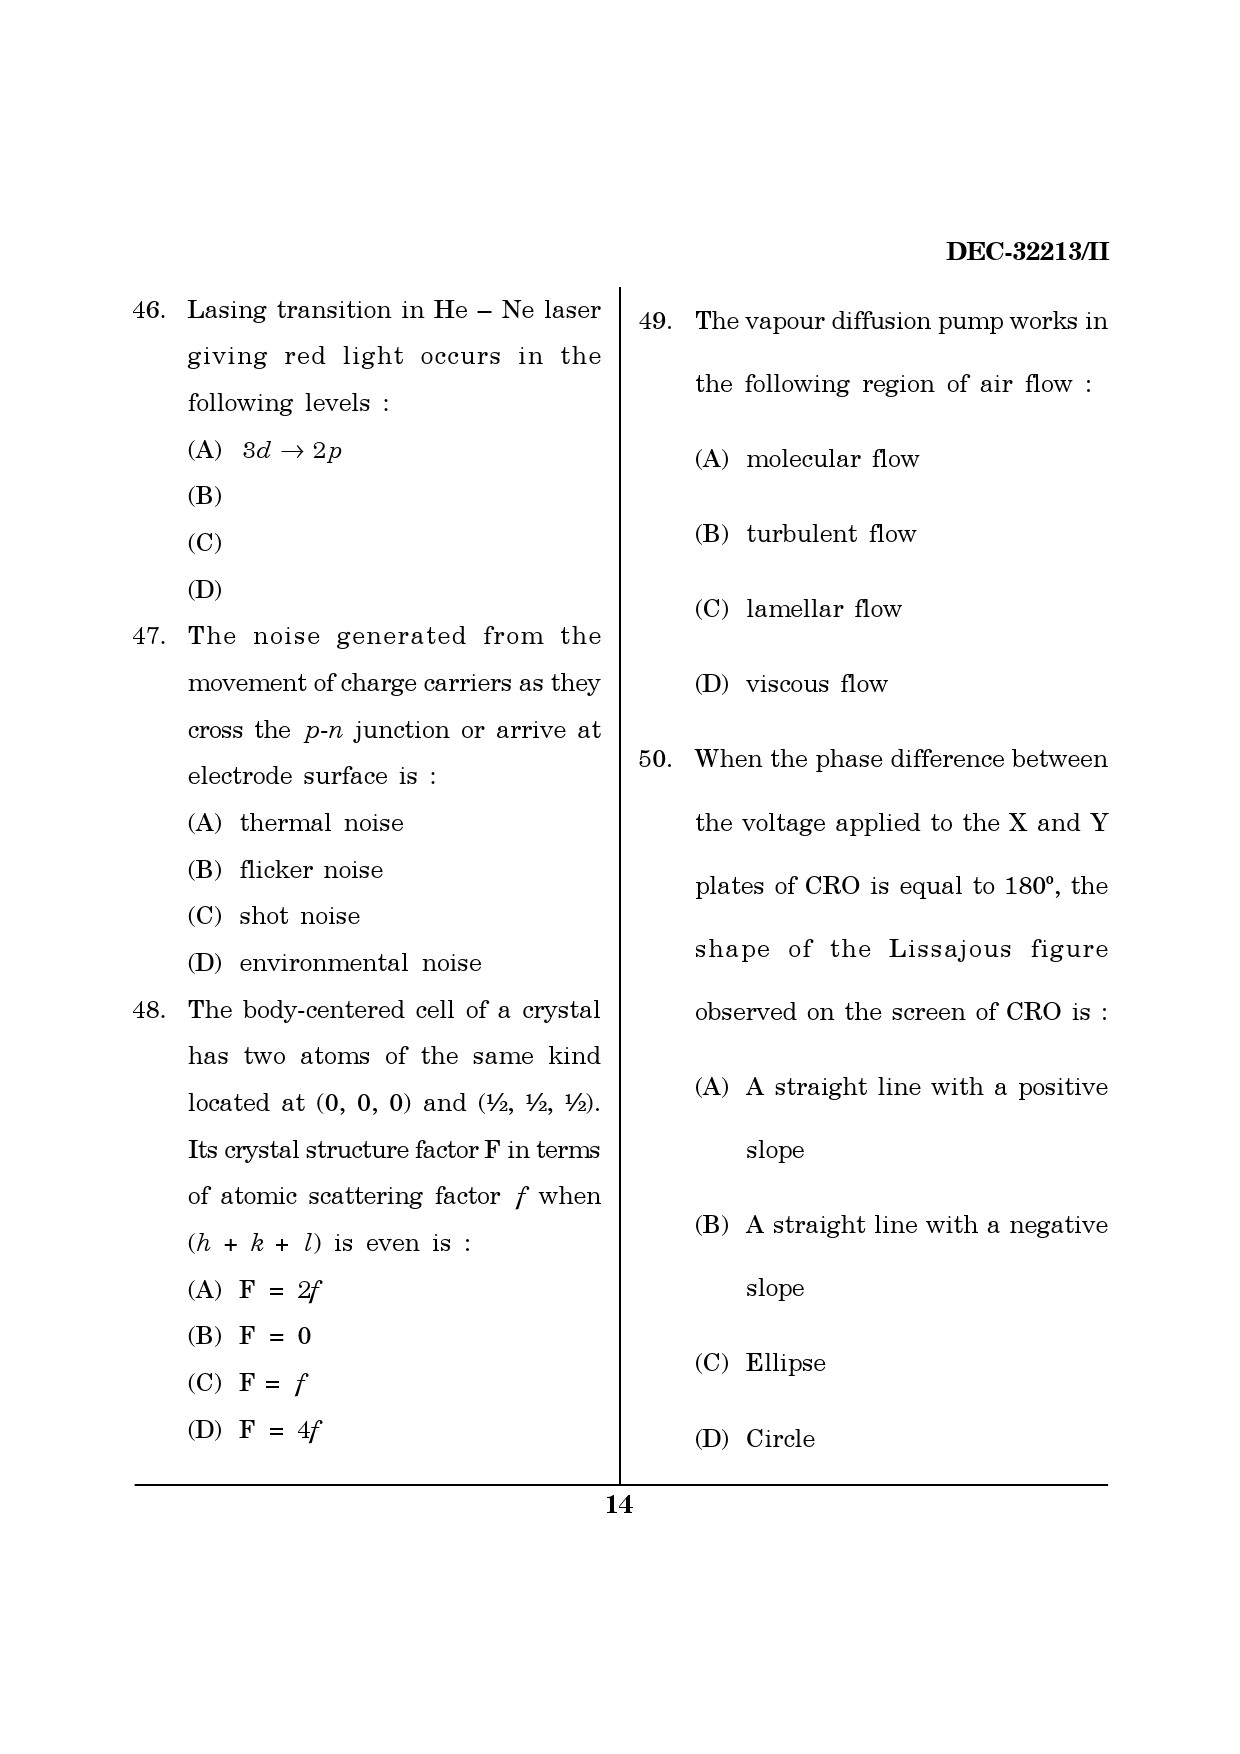 Maharashtra SET Physics Question Paper II December 2013 13